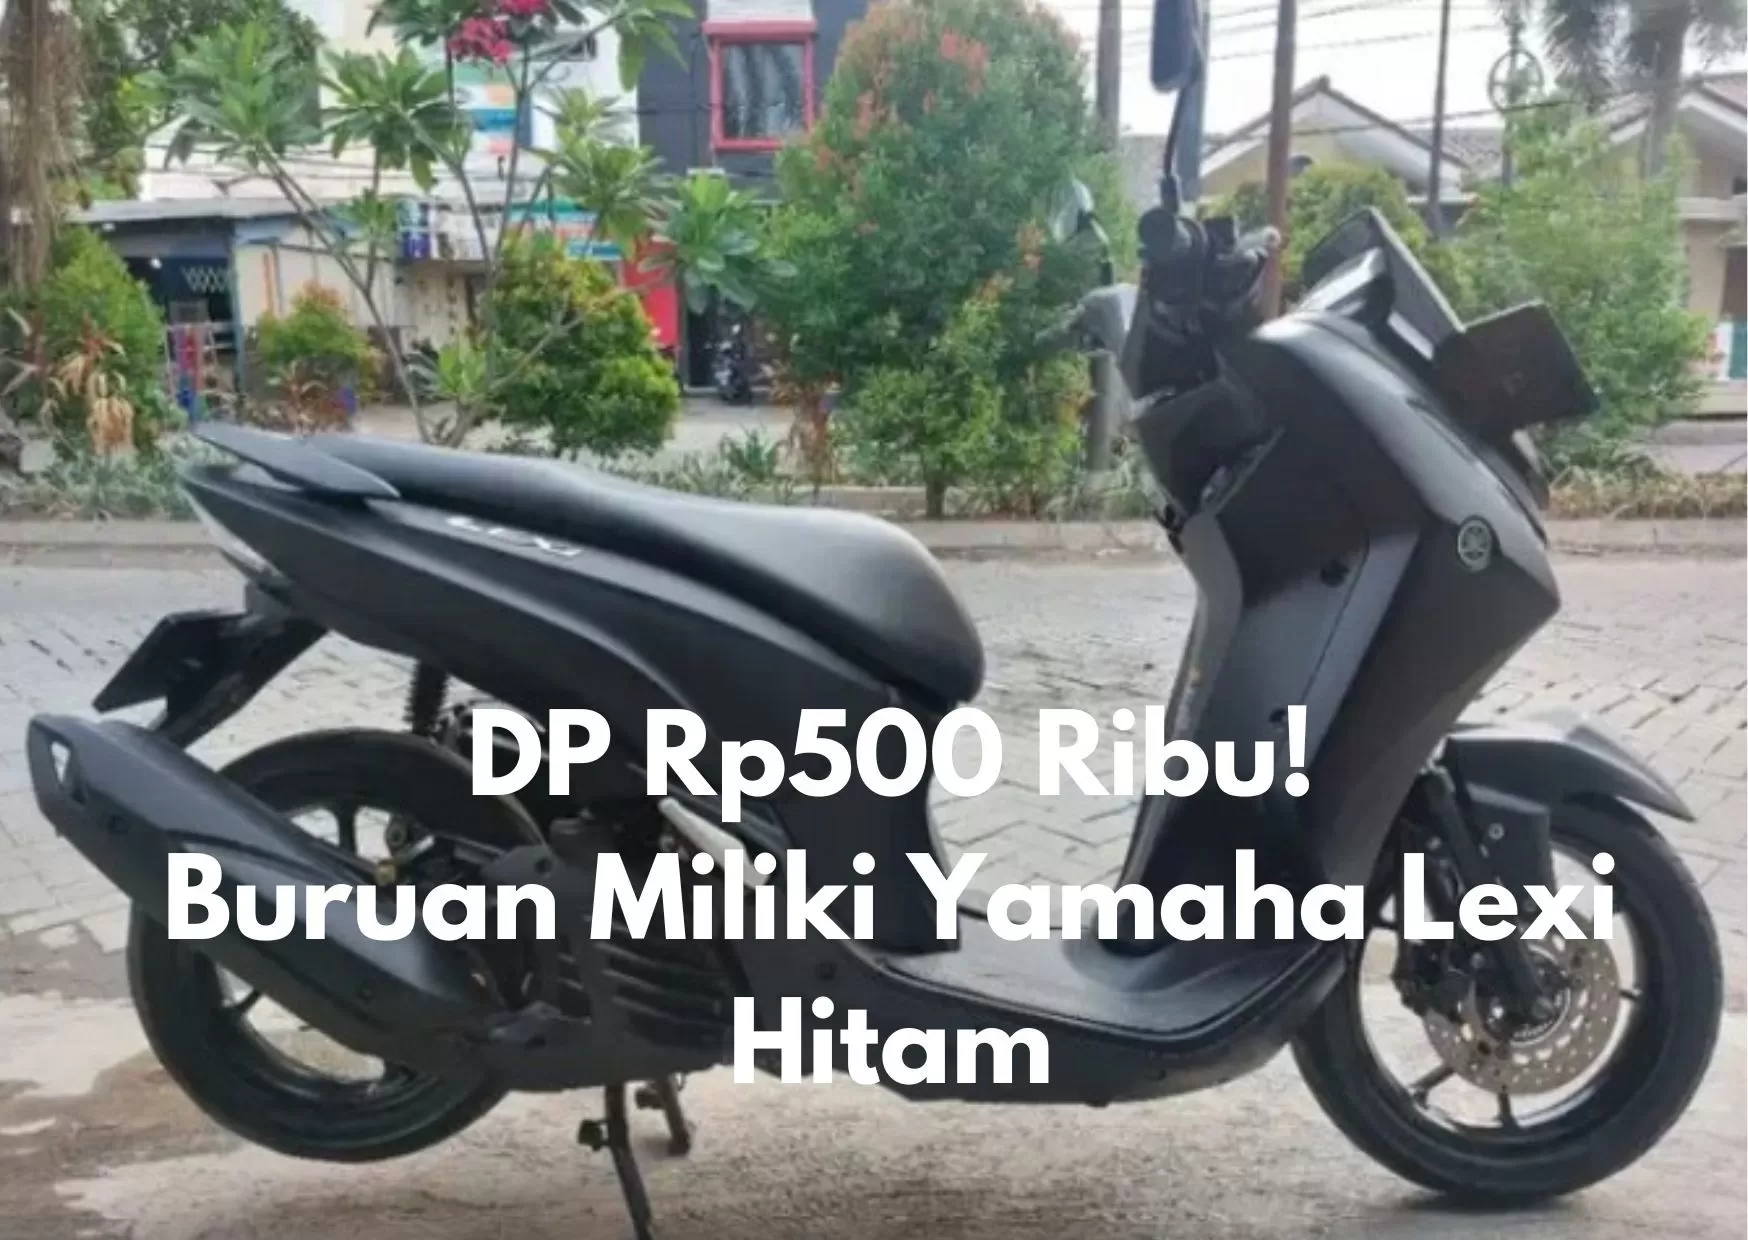 DP Rp500 Ribu Bisa Kredit Motor Yamaha Lexi Hitam 2018 di Kota Tangerang, Angsuran Rendah?